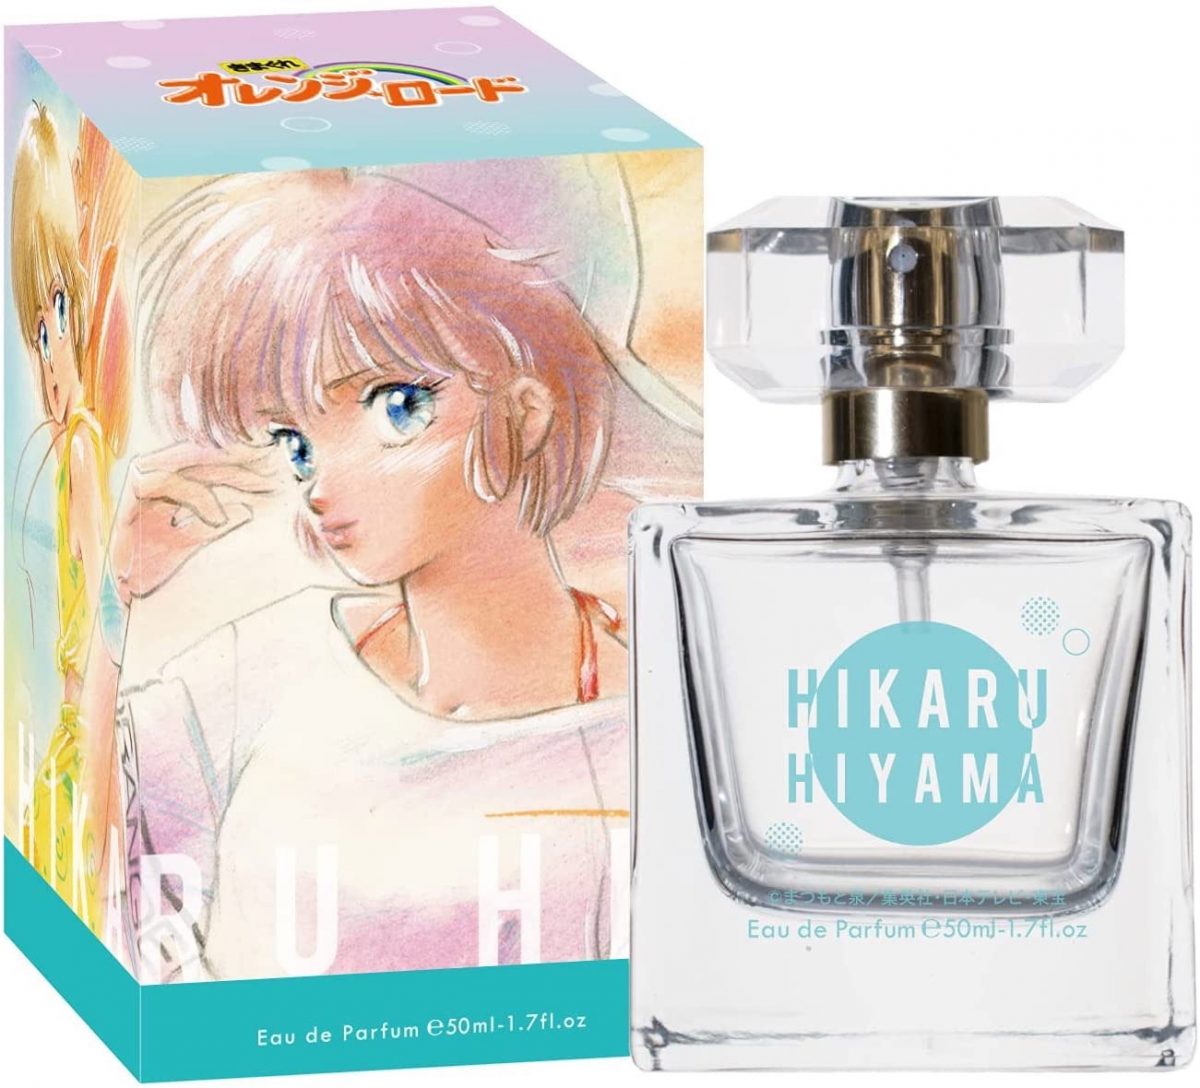 Hikaru Hiyama Official Perfume